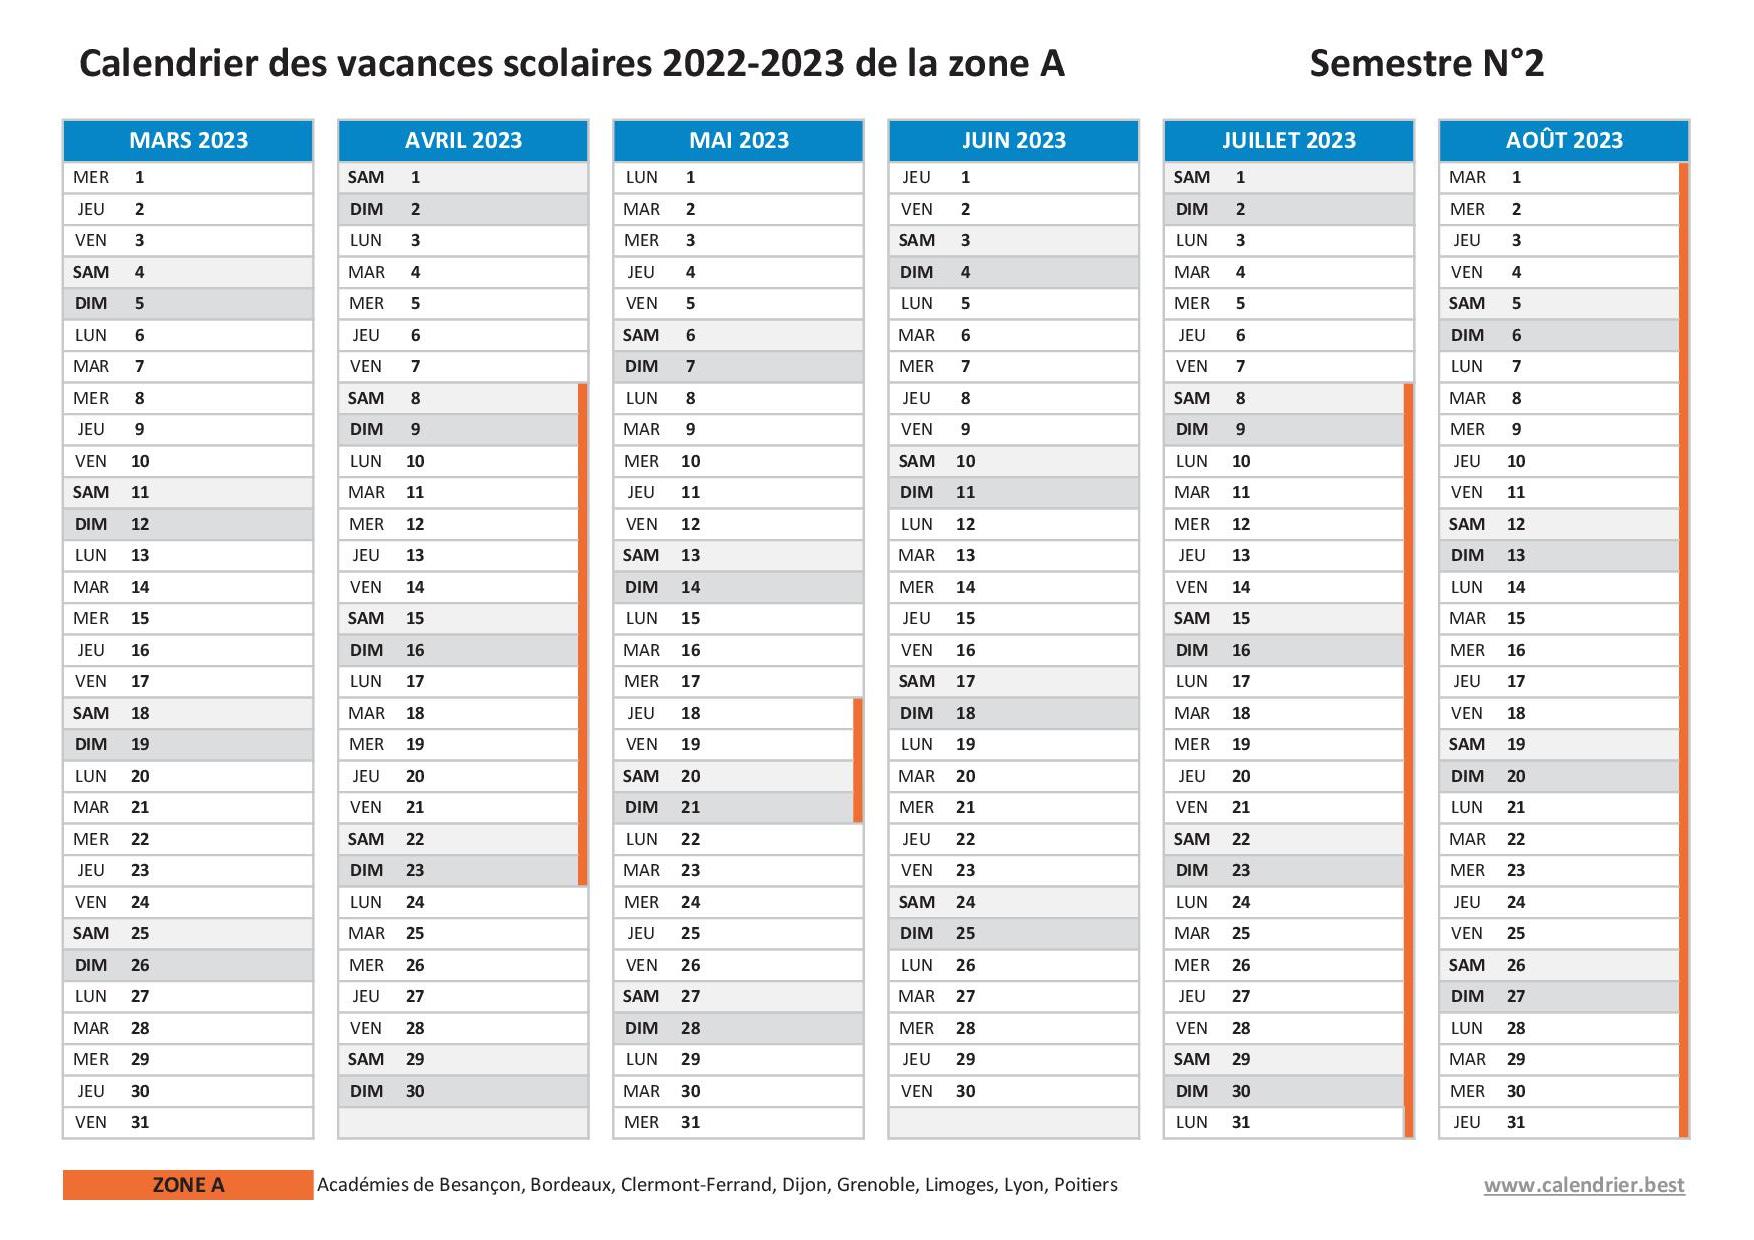 Vacances scolaires 2022 2023 Lyon : dates et calendrier scolaire 2022-2023